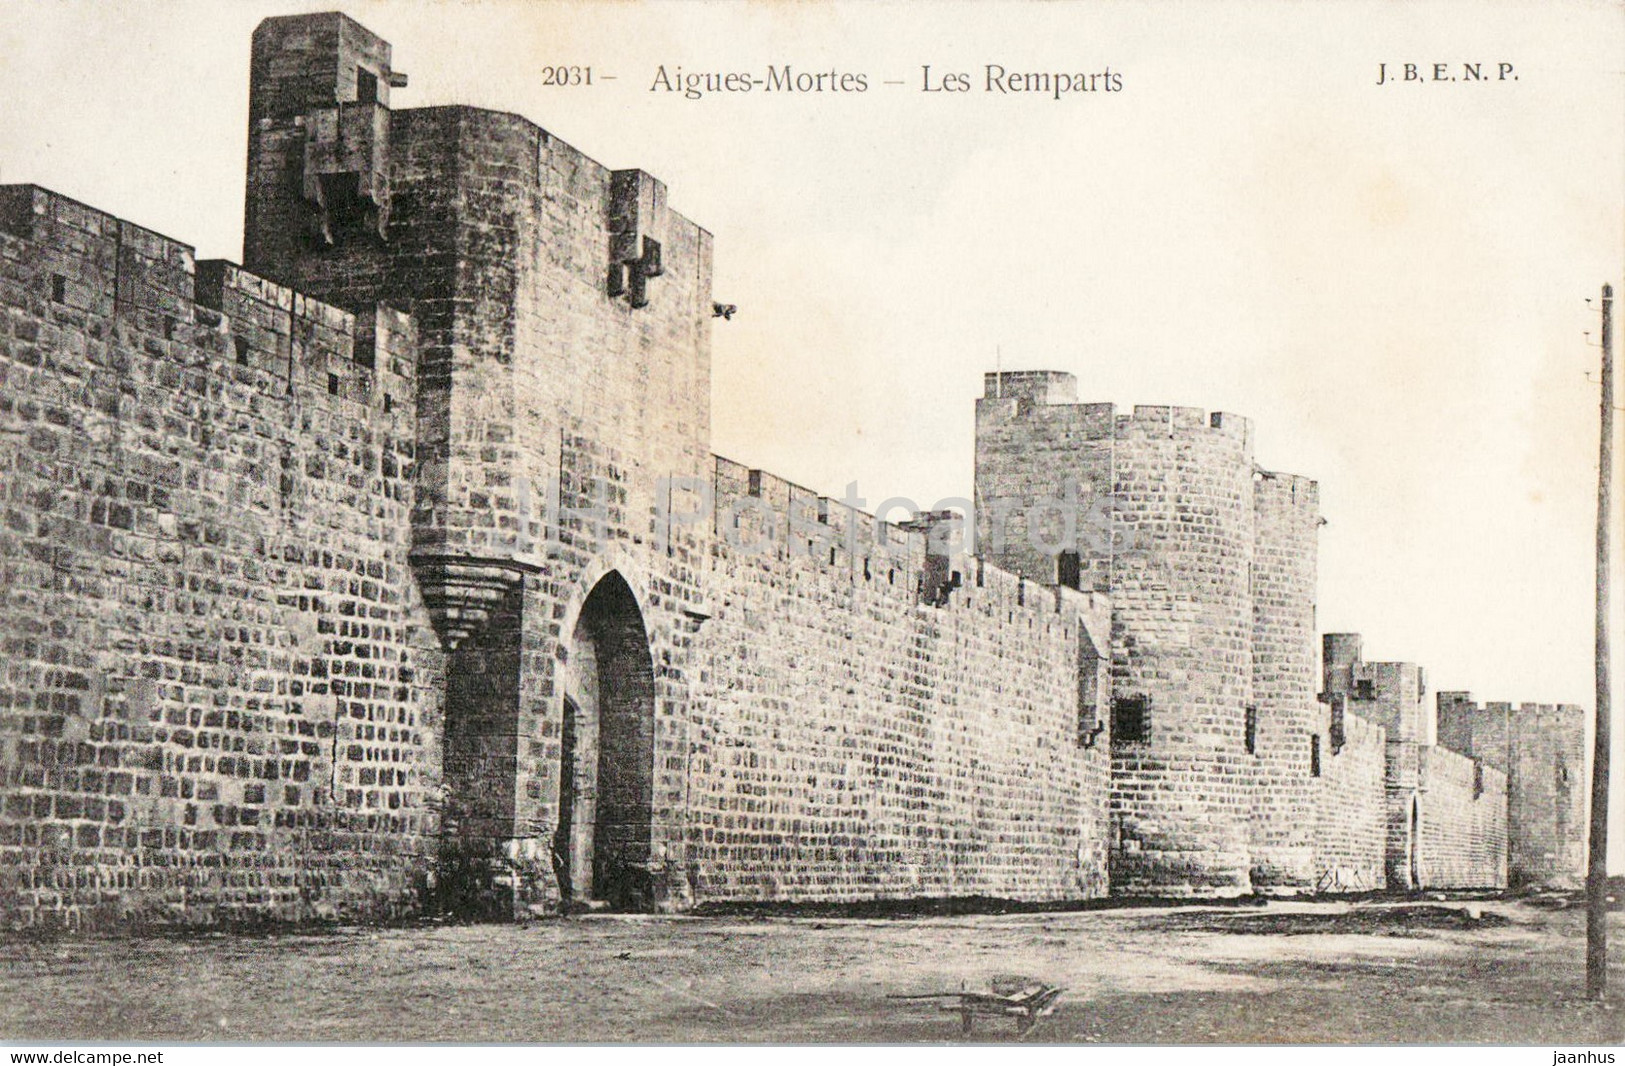 Aigues Mortes - Les Remparts - 2031 - Old Postcard - France - Unused - Aigues-Mortes